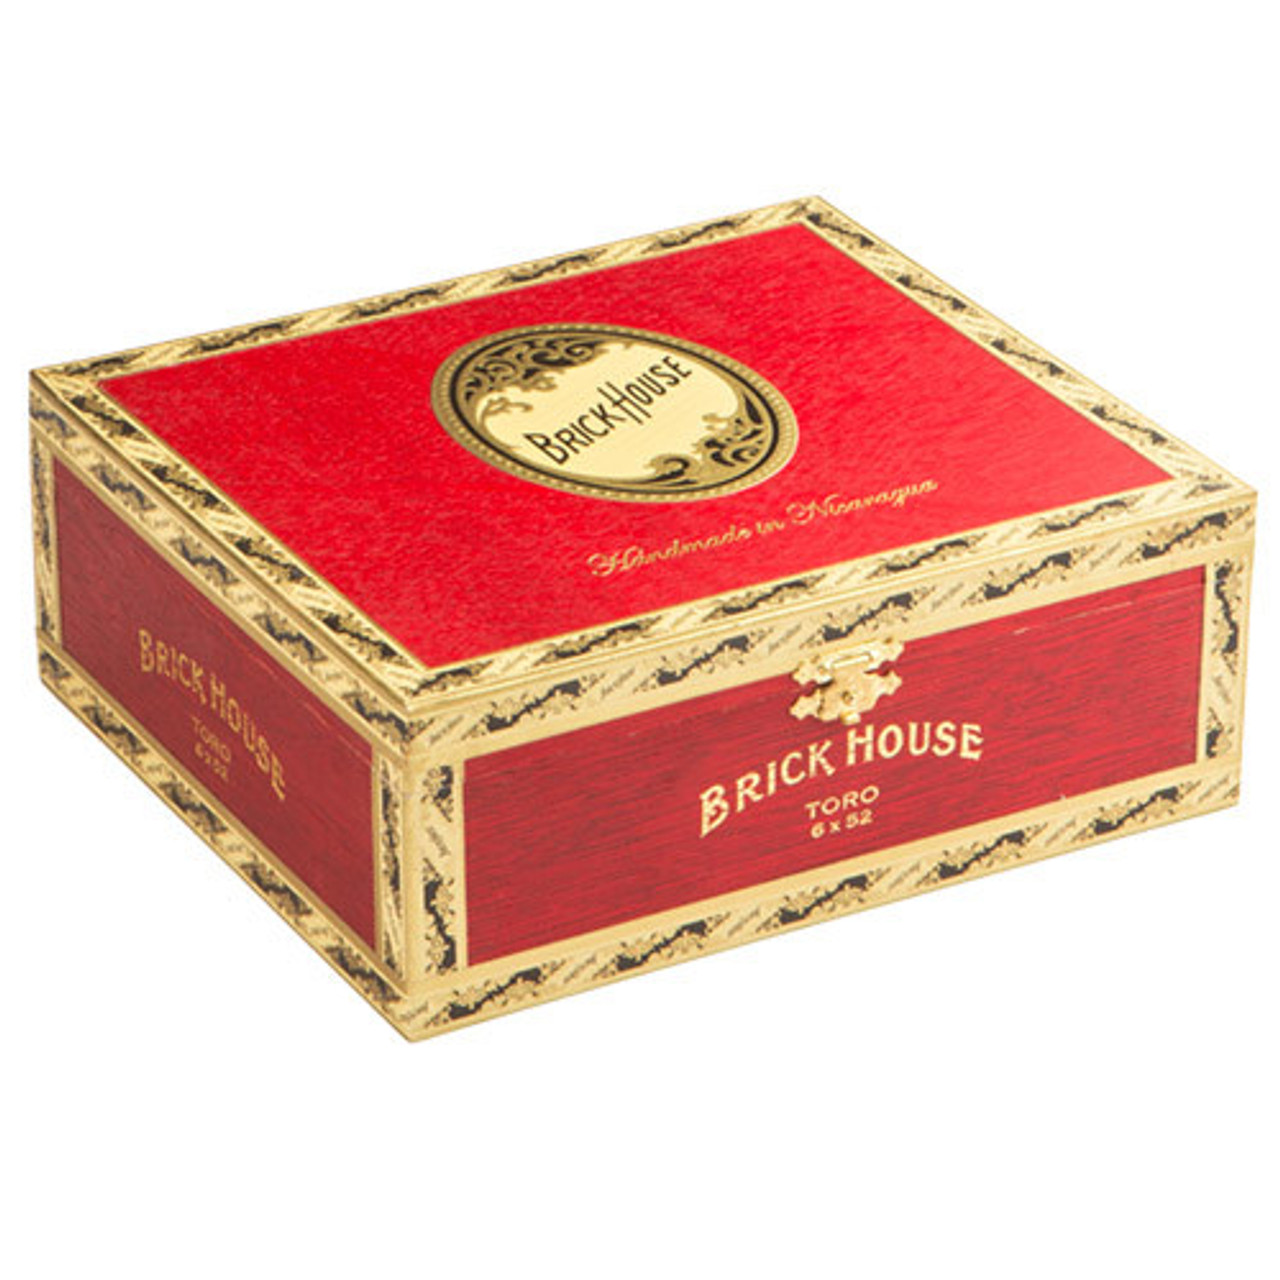 Brick House Robusto Cigars - 5 x 54 (Box of 25) *Box